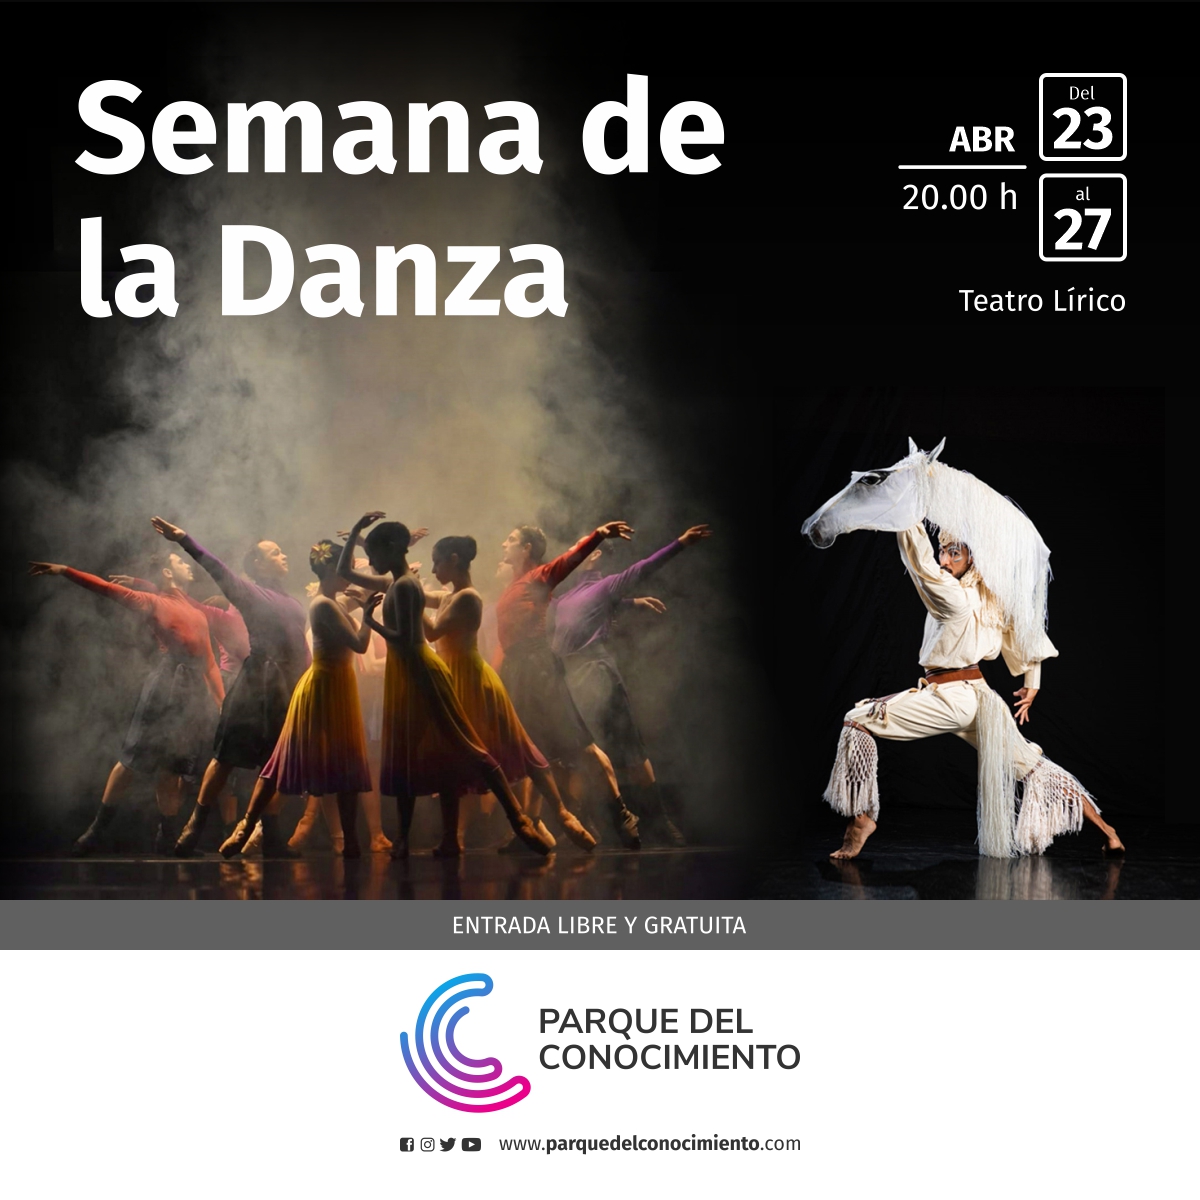 Los Ballets Clásico y Folklorico del Parque celebrarán el Día Internacional de la Danza con una semana llena de baile y cultura imagen-25